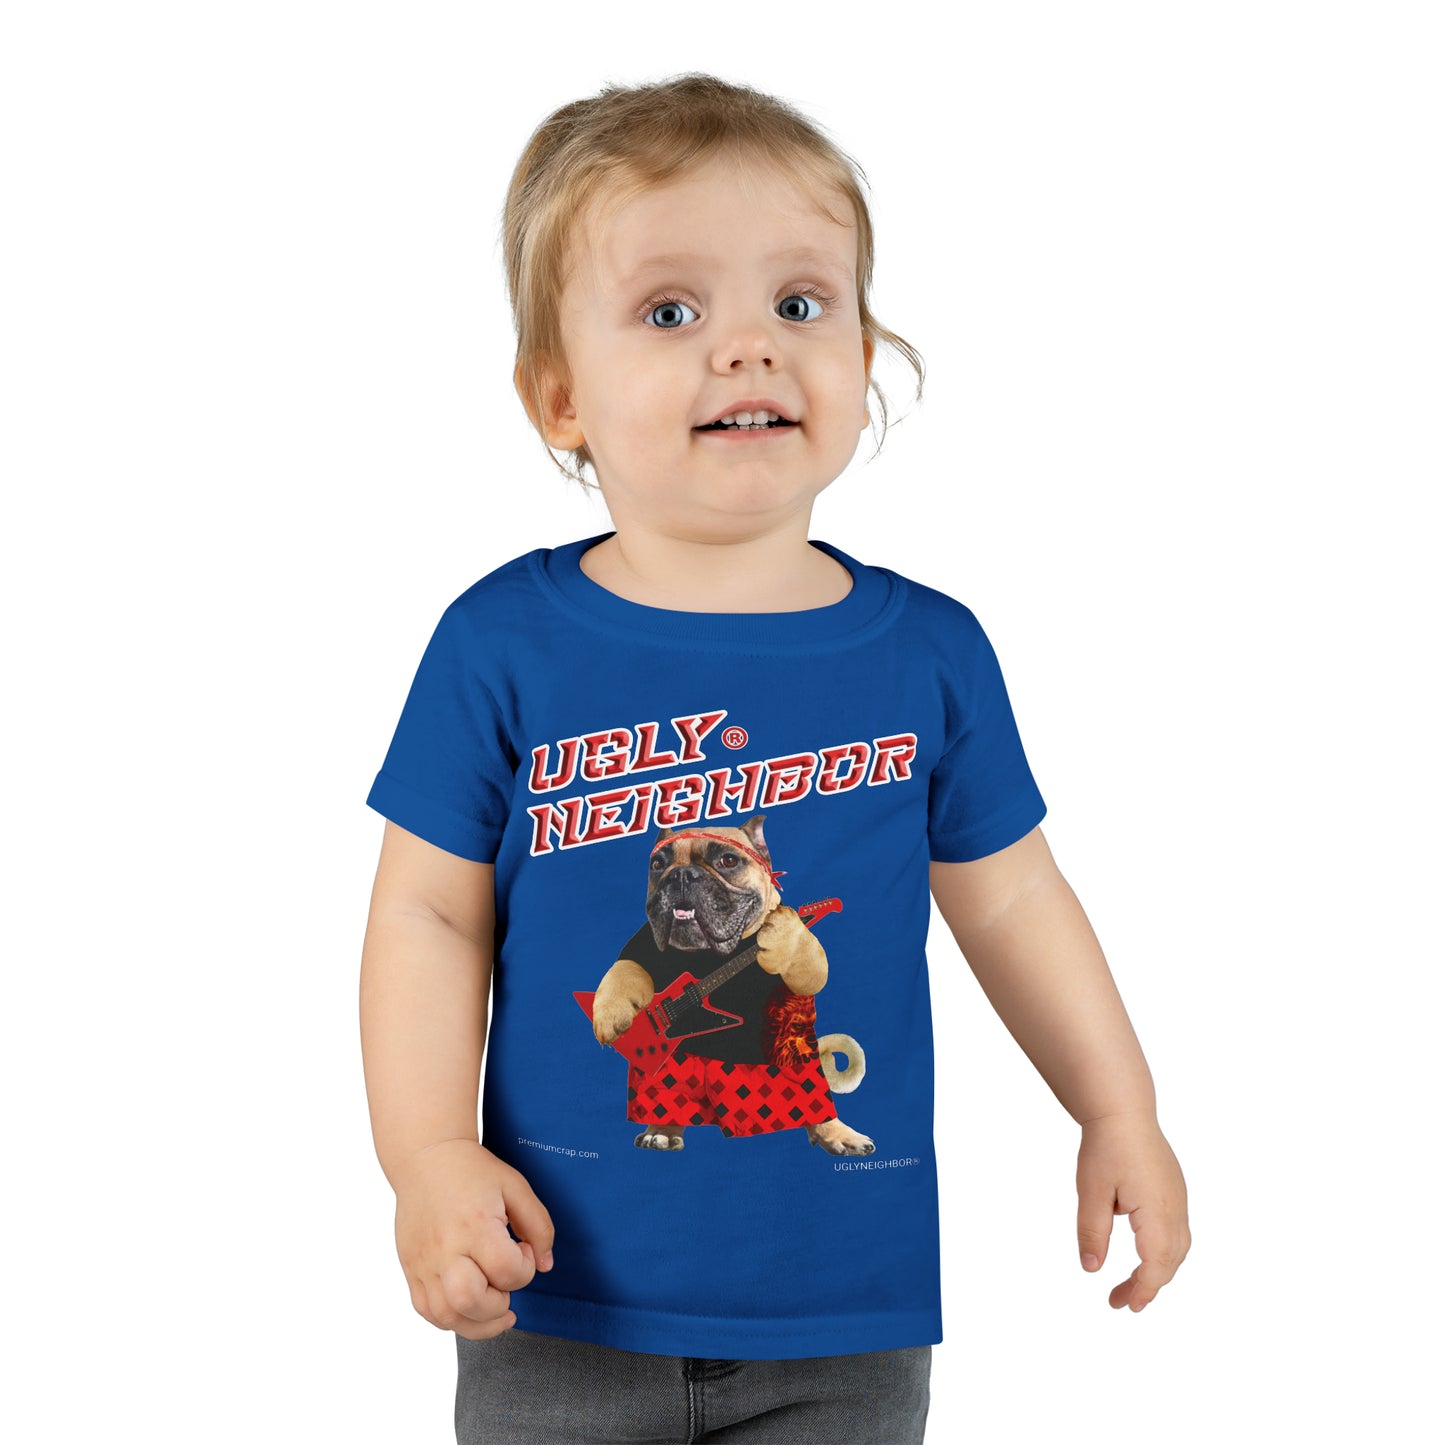 Ugly Neighbor II Toddler T-shirt